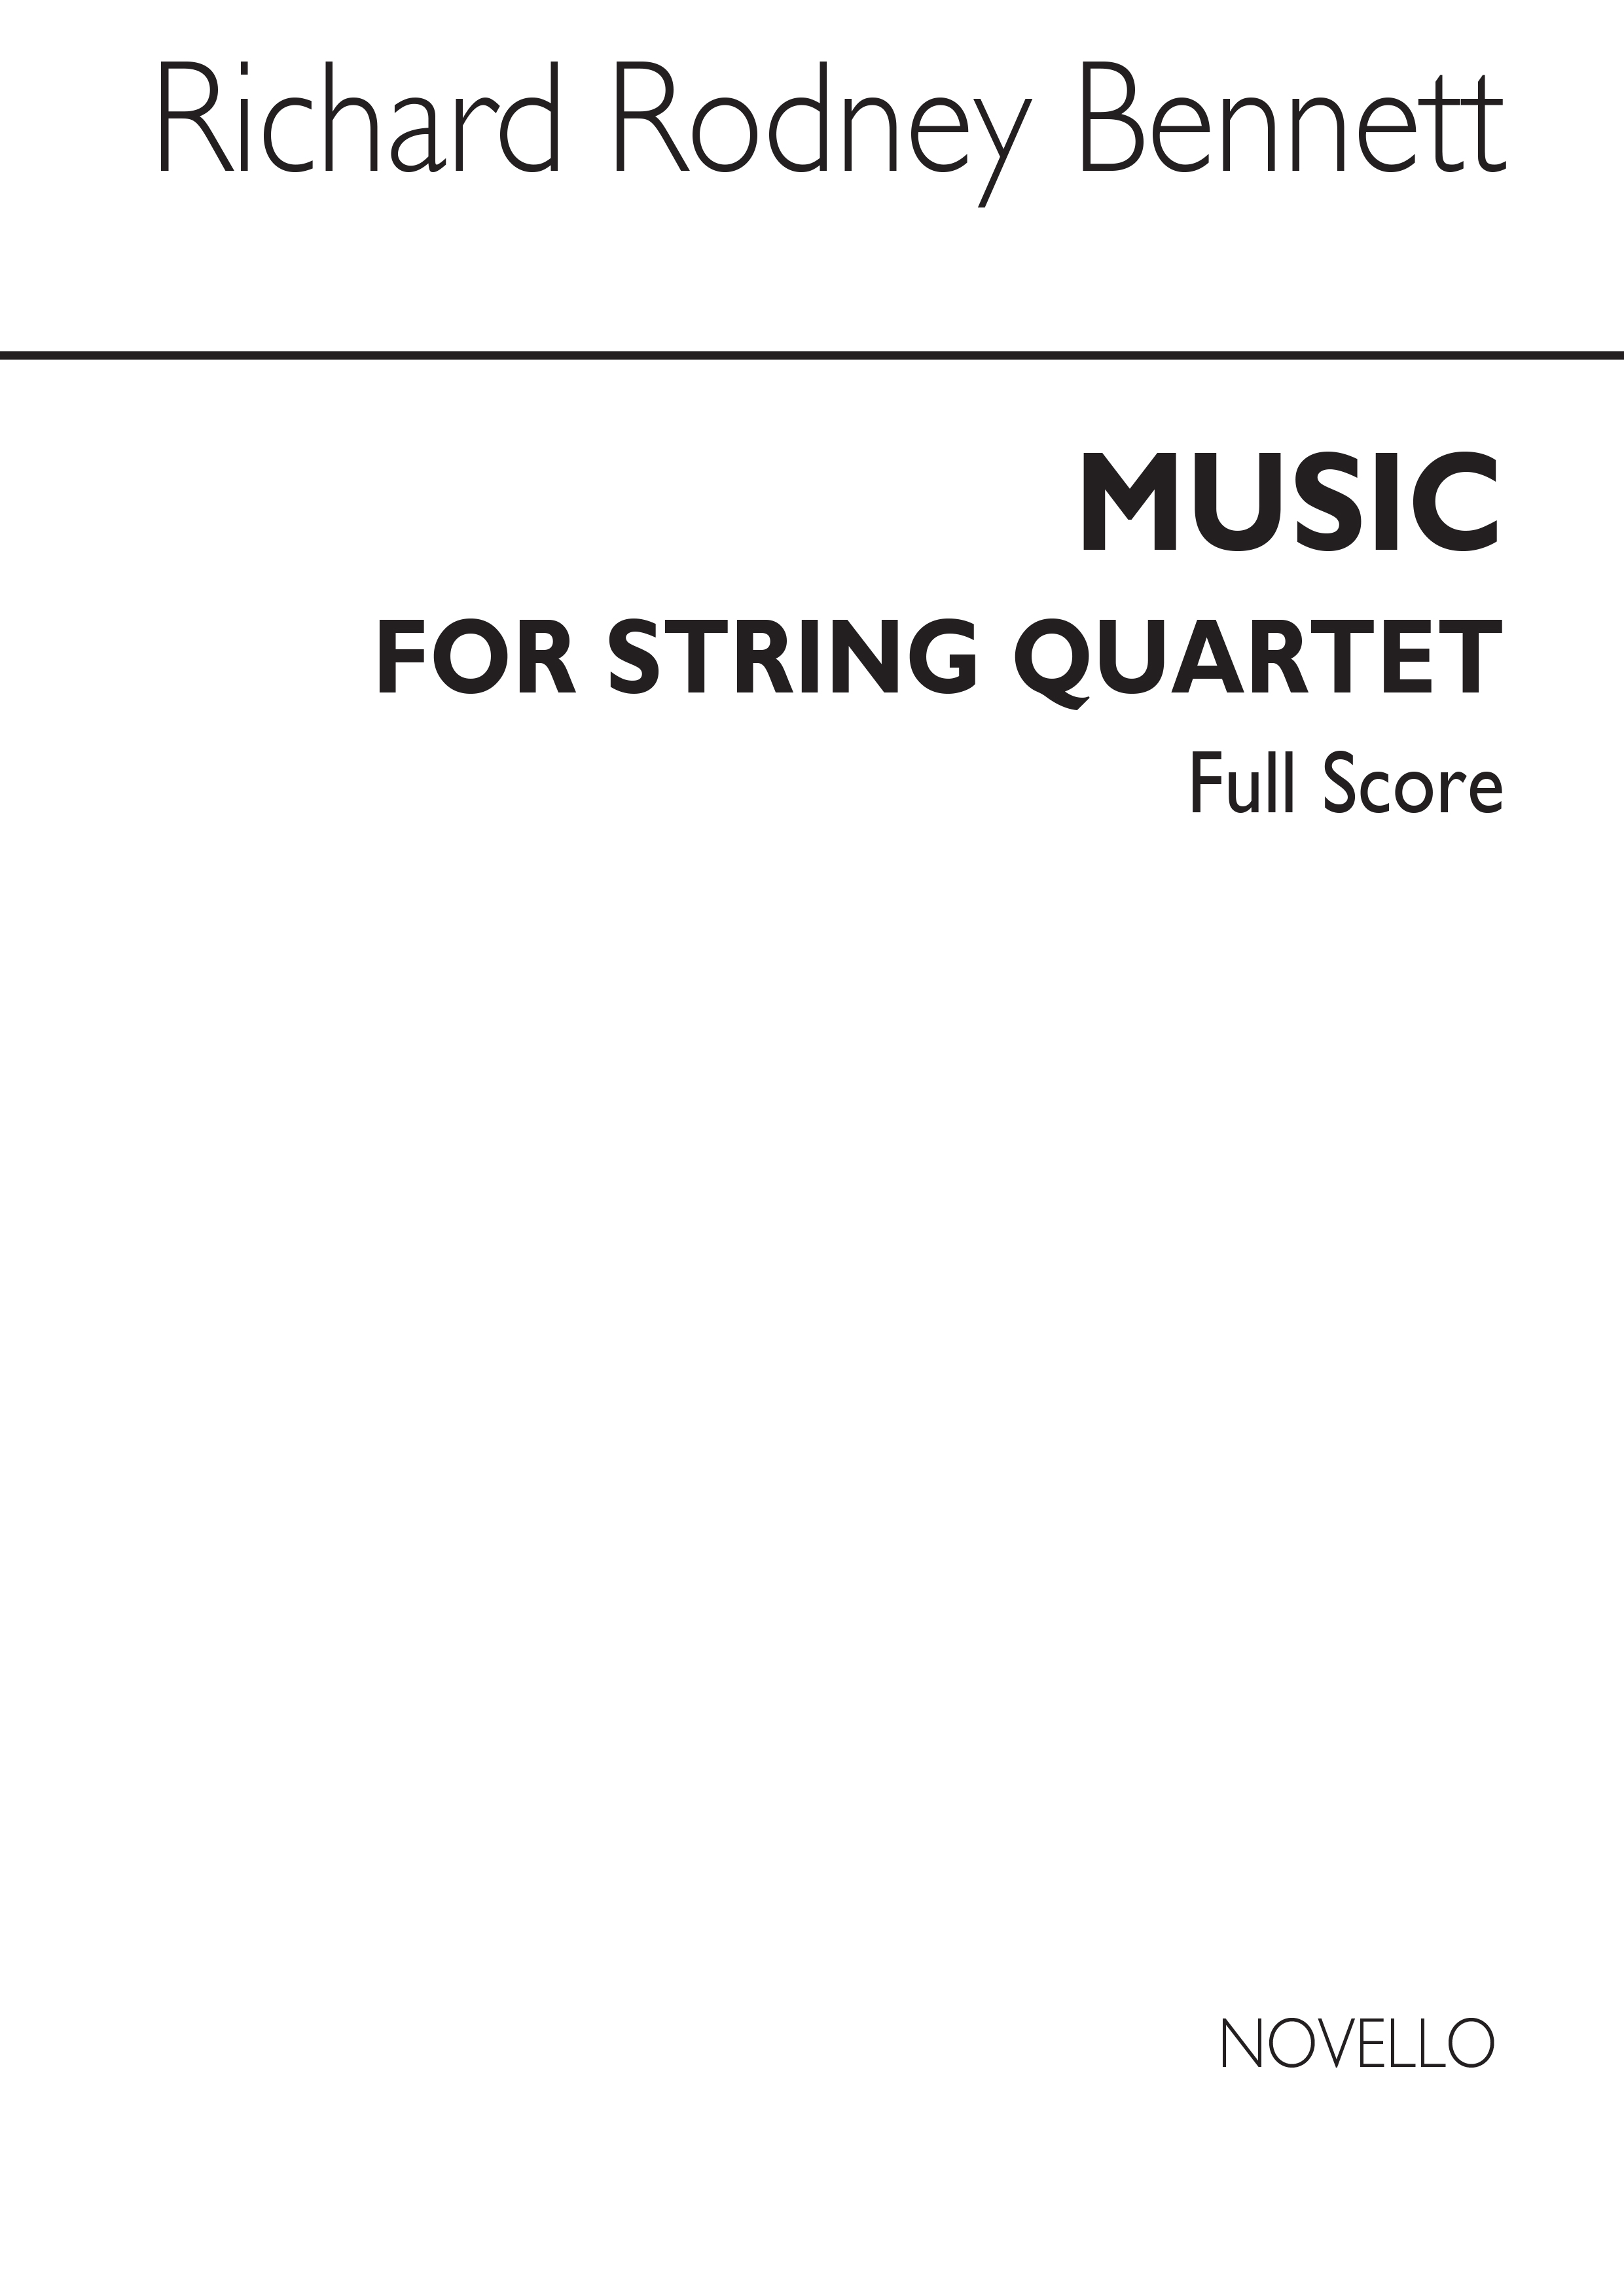 RR Bennett: Music For String Quartet (Score)